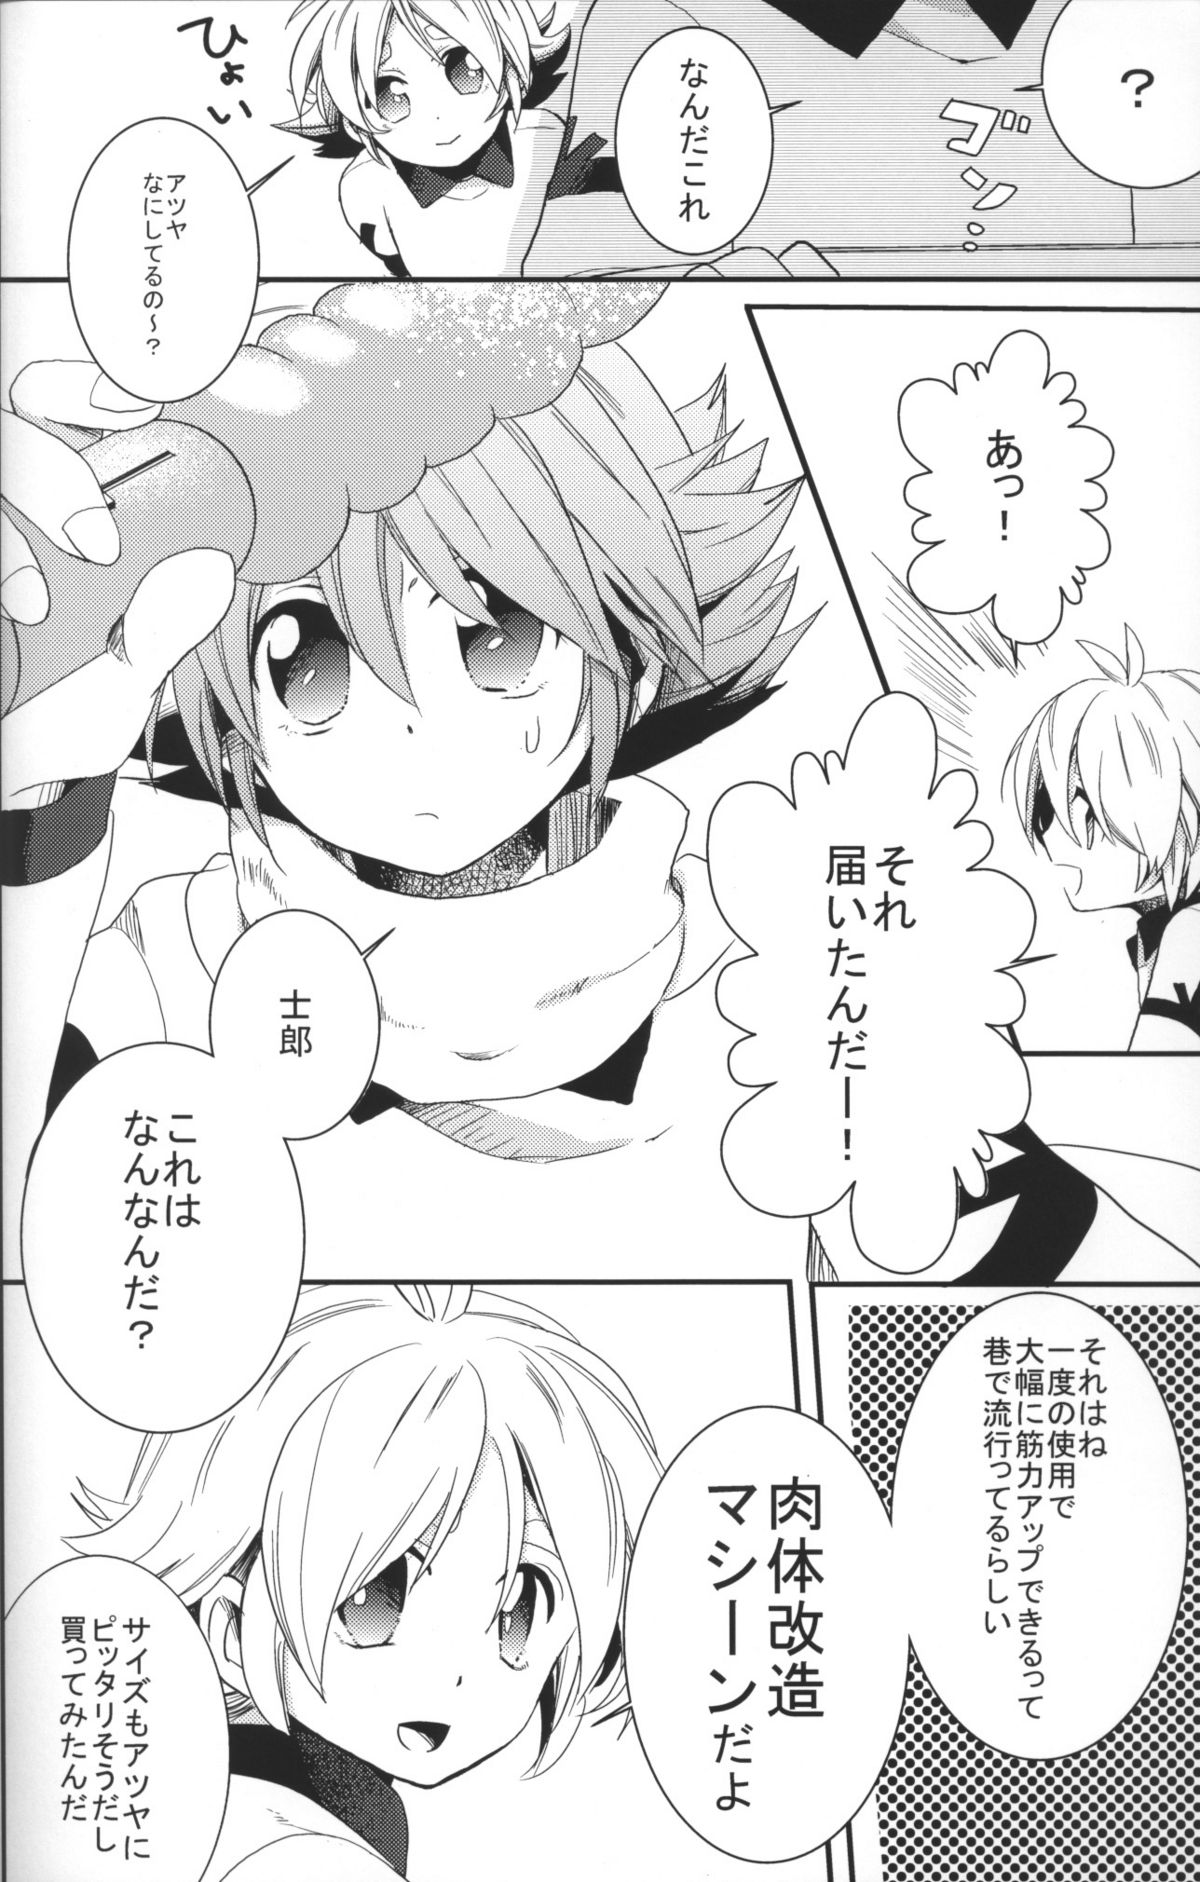 [Tsukasa] SnowPrank (RAW) page 5 full